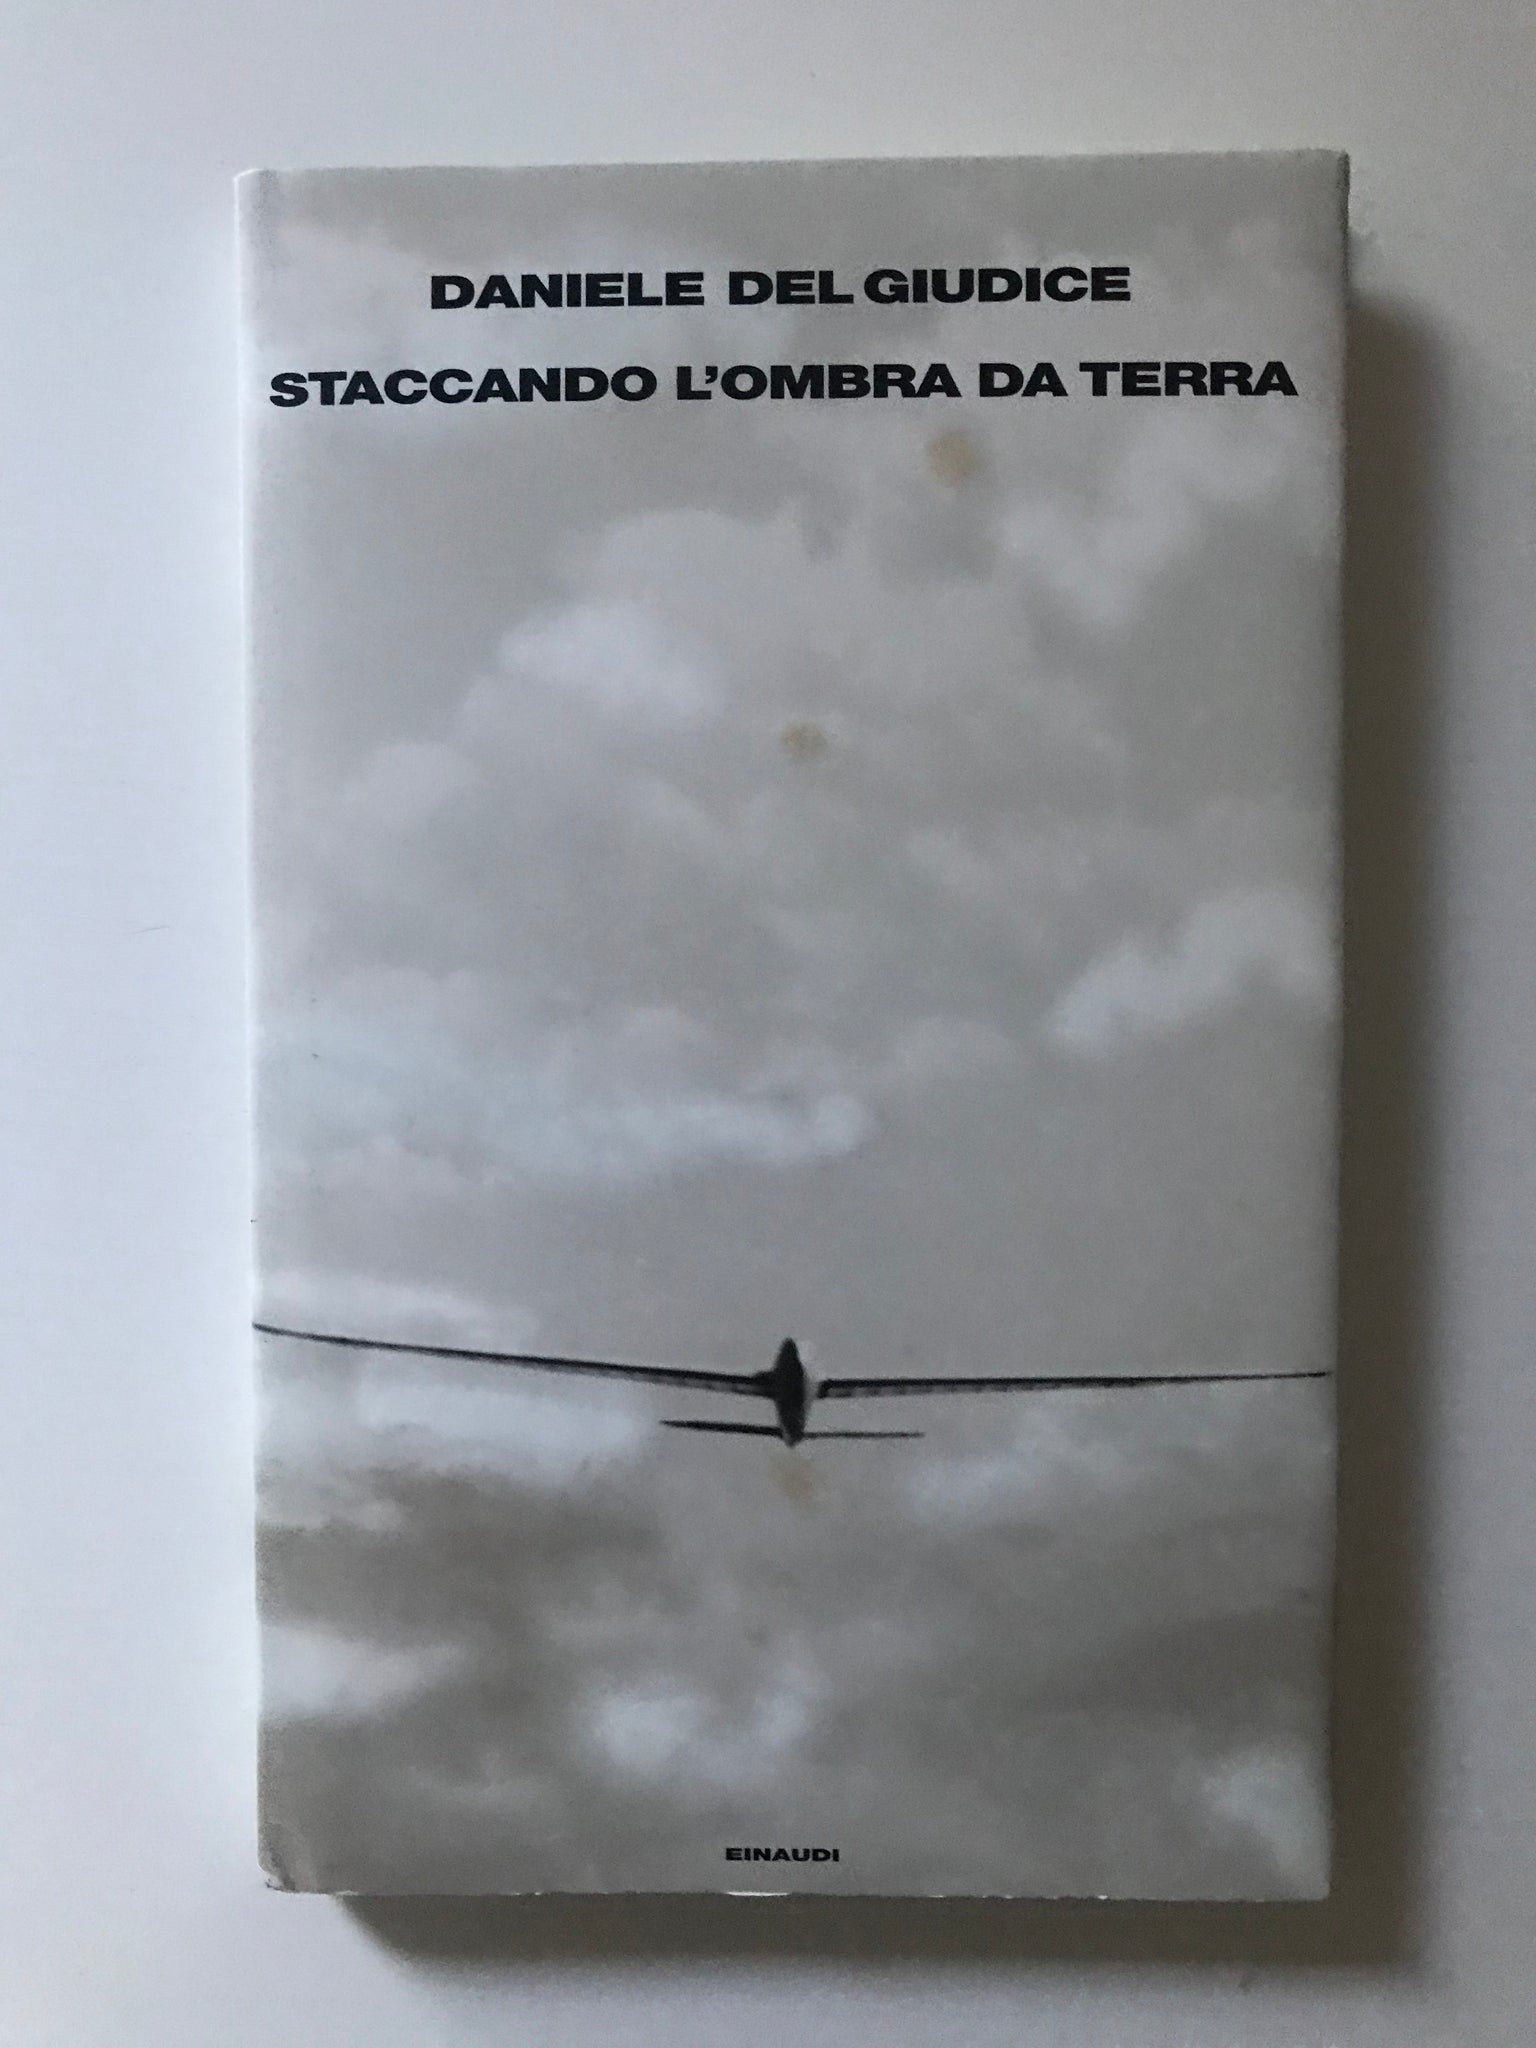 Daniele Del Giudice - Staccando l'ombra da terra